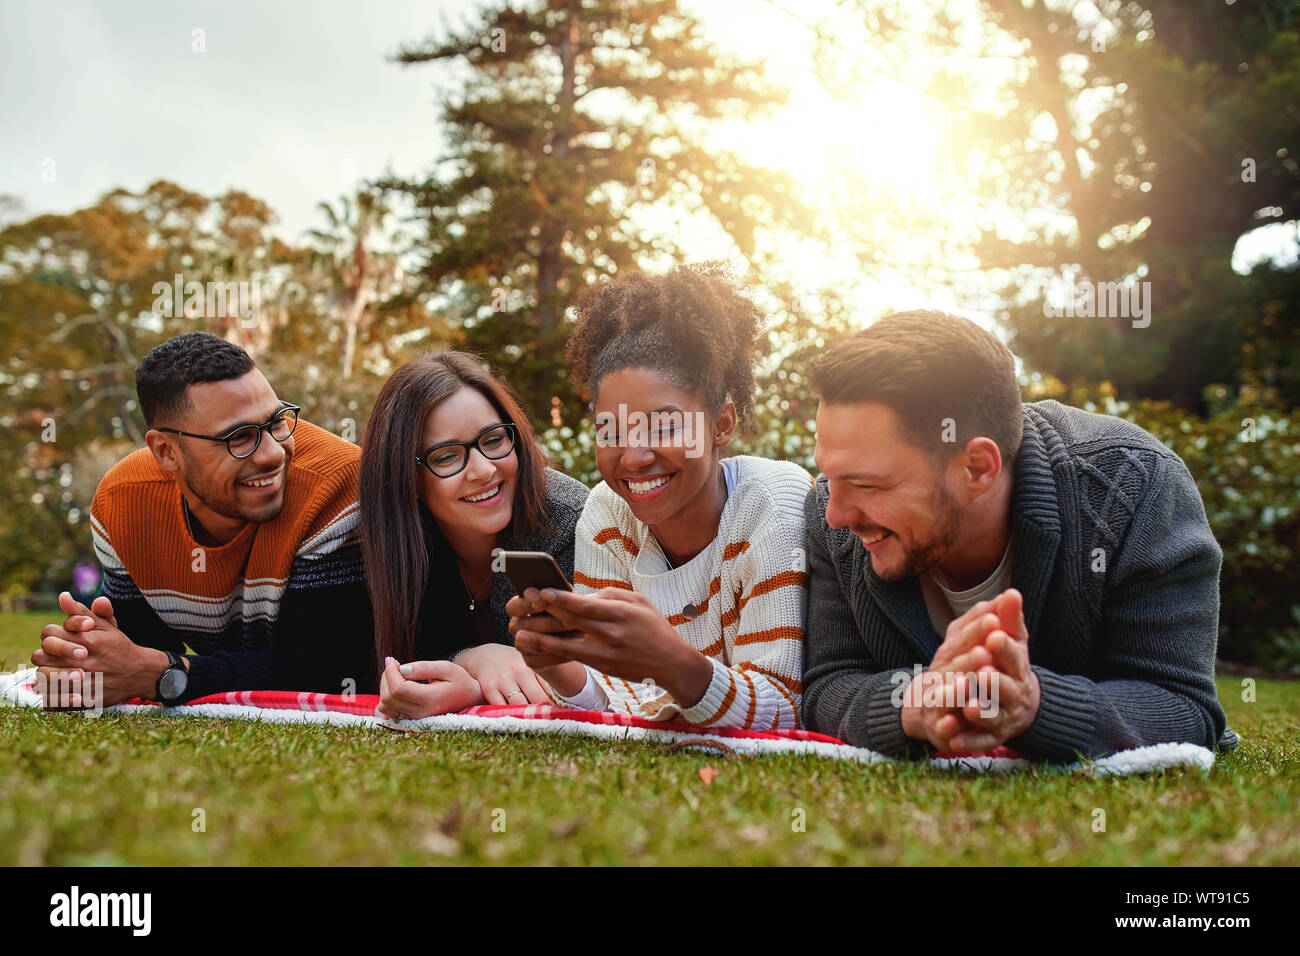 Sorridente americano africano donna sdraiata con il suo gruppo multietnico di amici gli sms su un cellulare in un parco - molto felice gruppo di amici Foto Stock